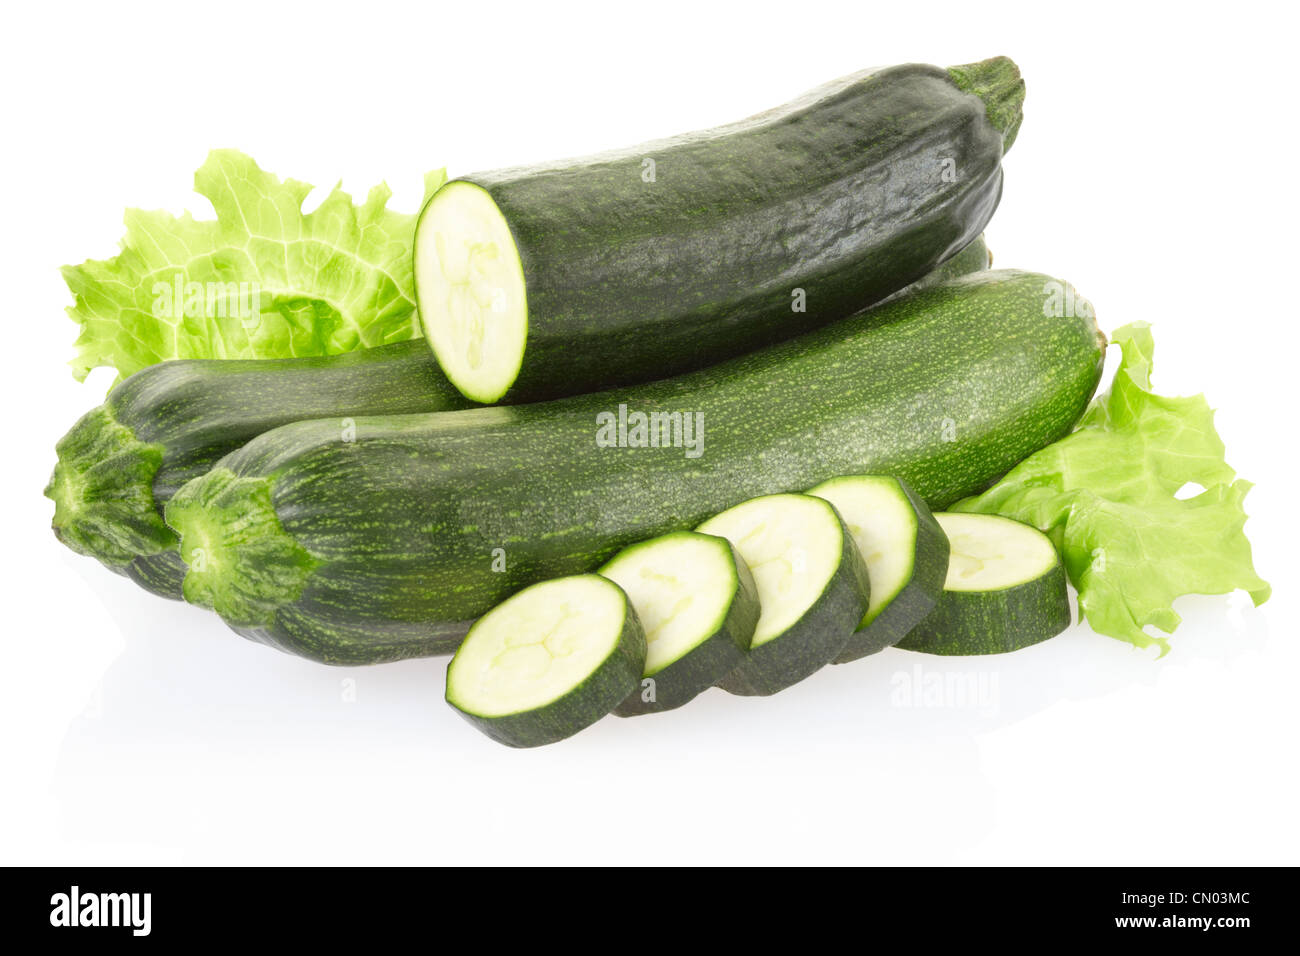 Zucchini or courgette Stock Photo